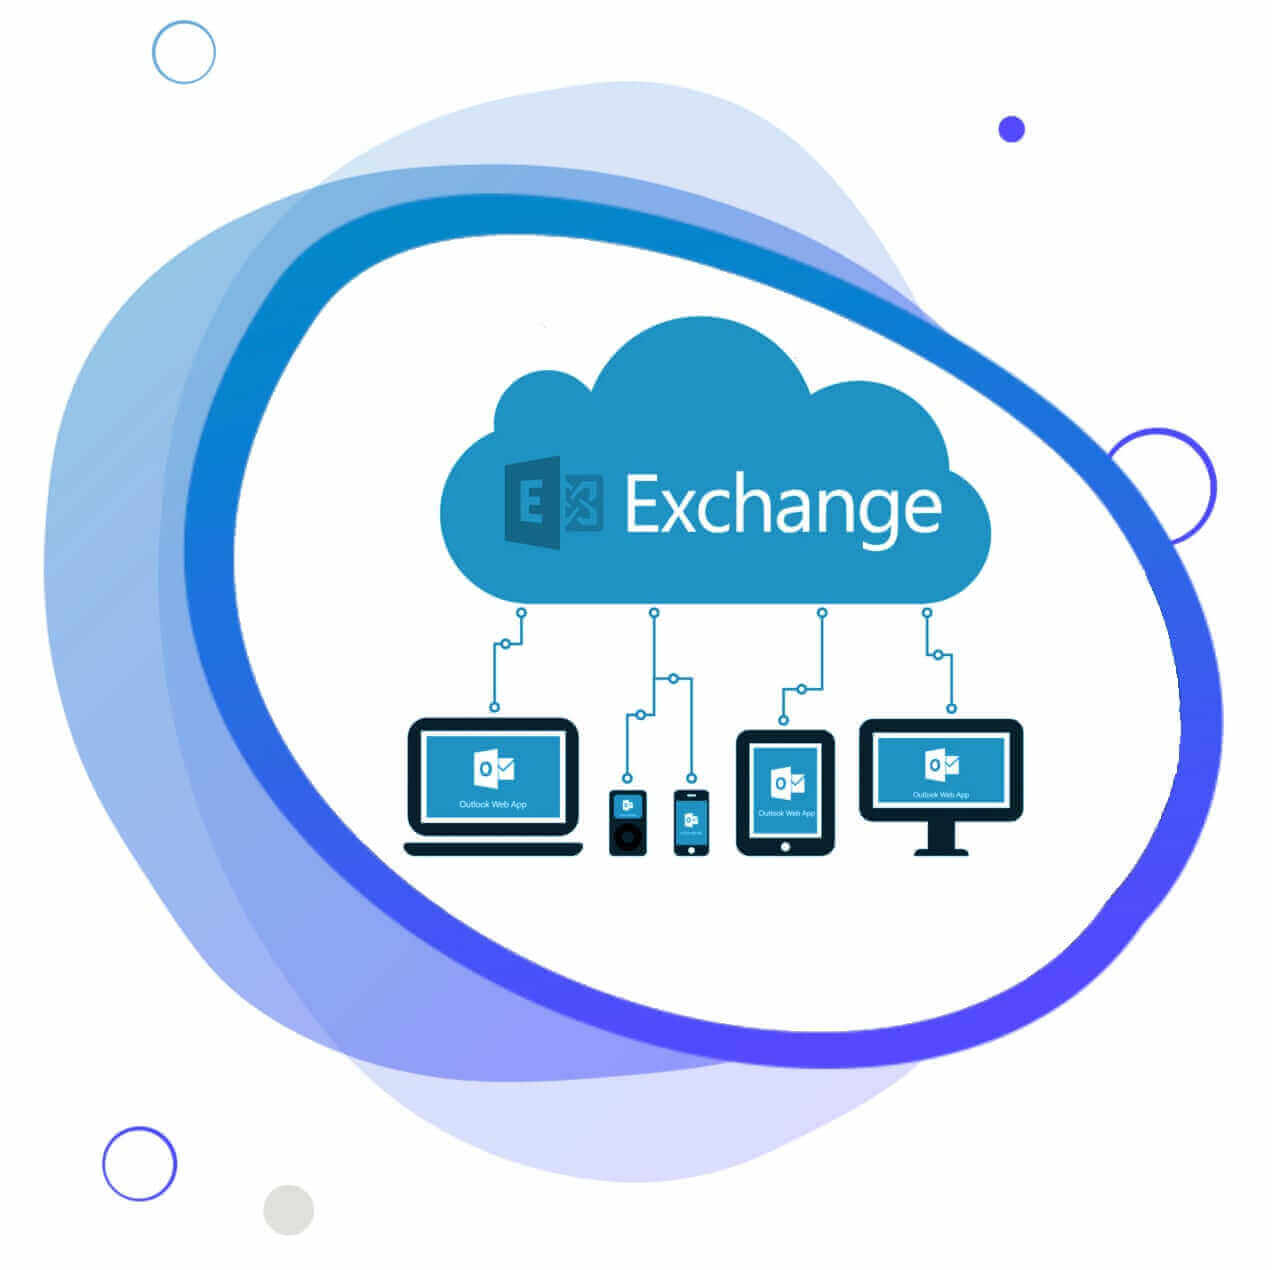 Nutze Hosted Exchange als Cloud Service – made in Germany. Wir bieten unseren Kunden als nationaler IT Lösungsanbieter die Sicherheit einer ausschließlich in Deutschland betriebenen Infrastruktur.